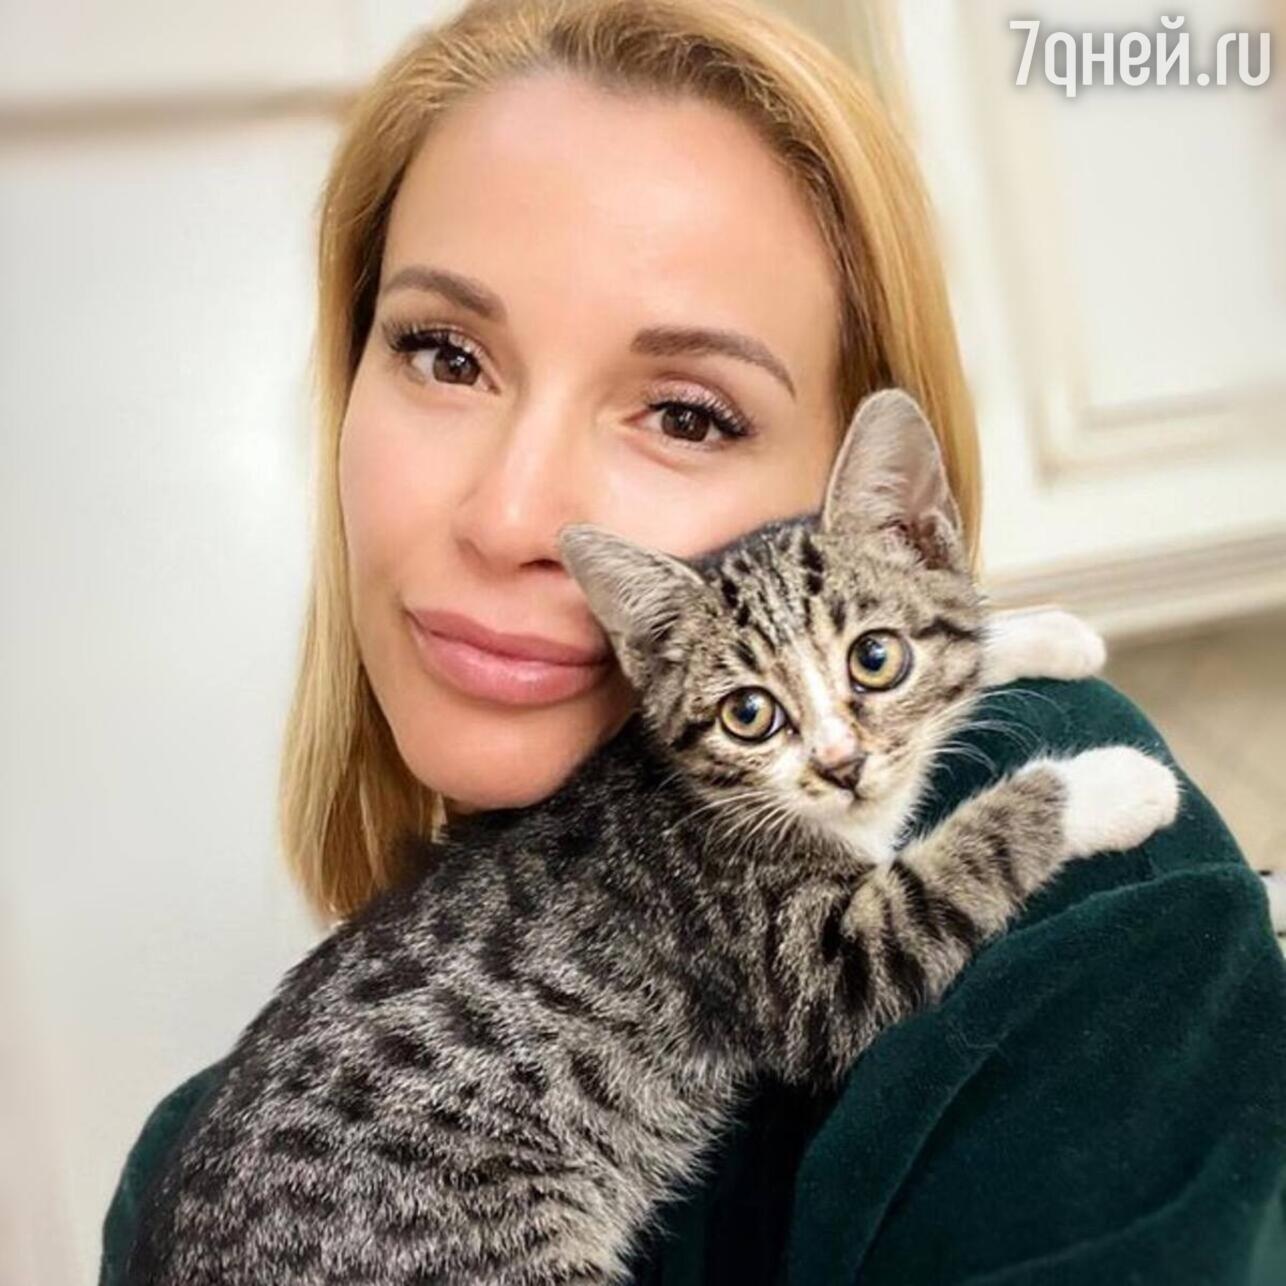 Ольга Орлова с кошкой